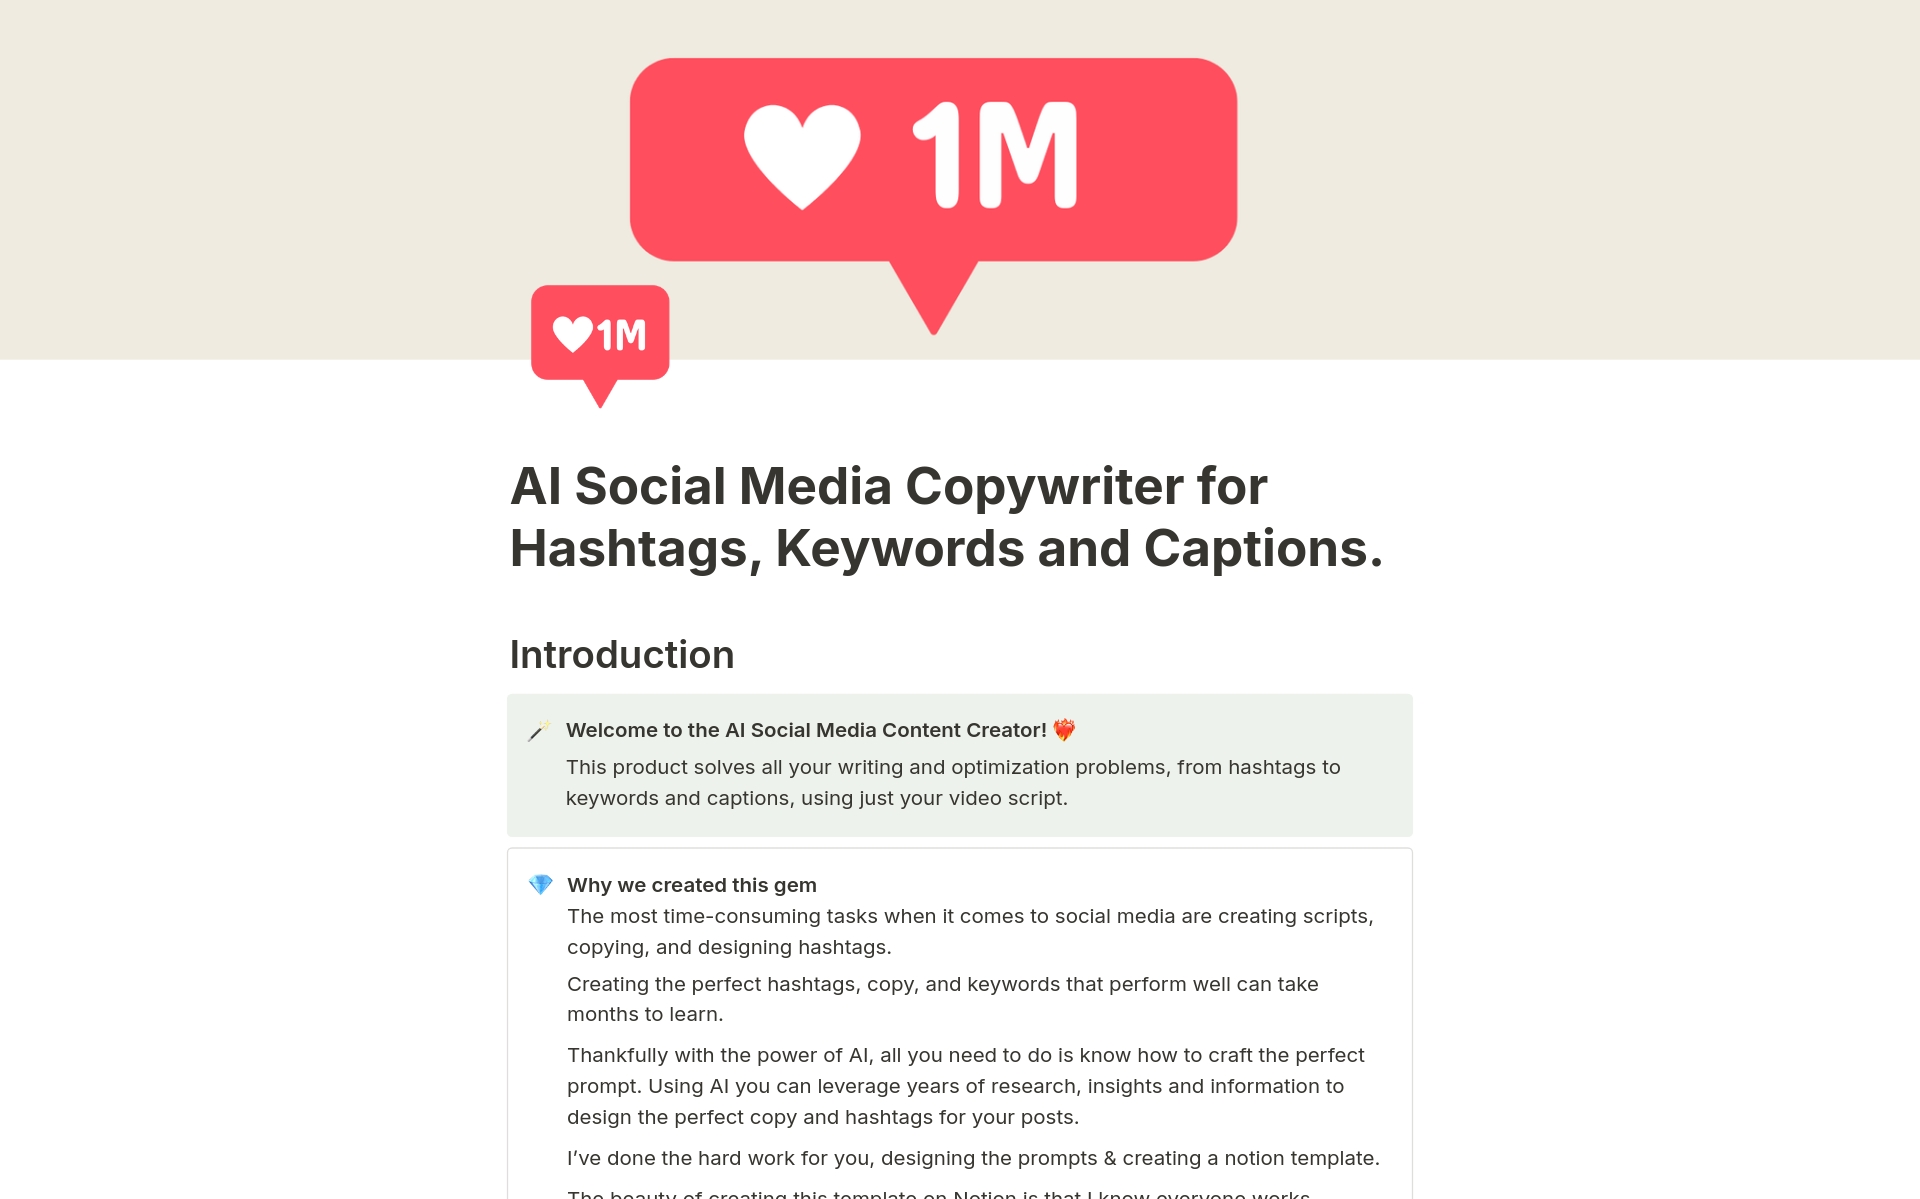 Uma prévia do modelo para AI Social Media Copywriter Hashtags & Hooks